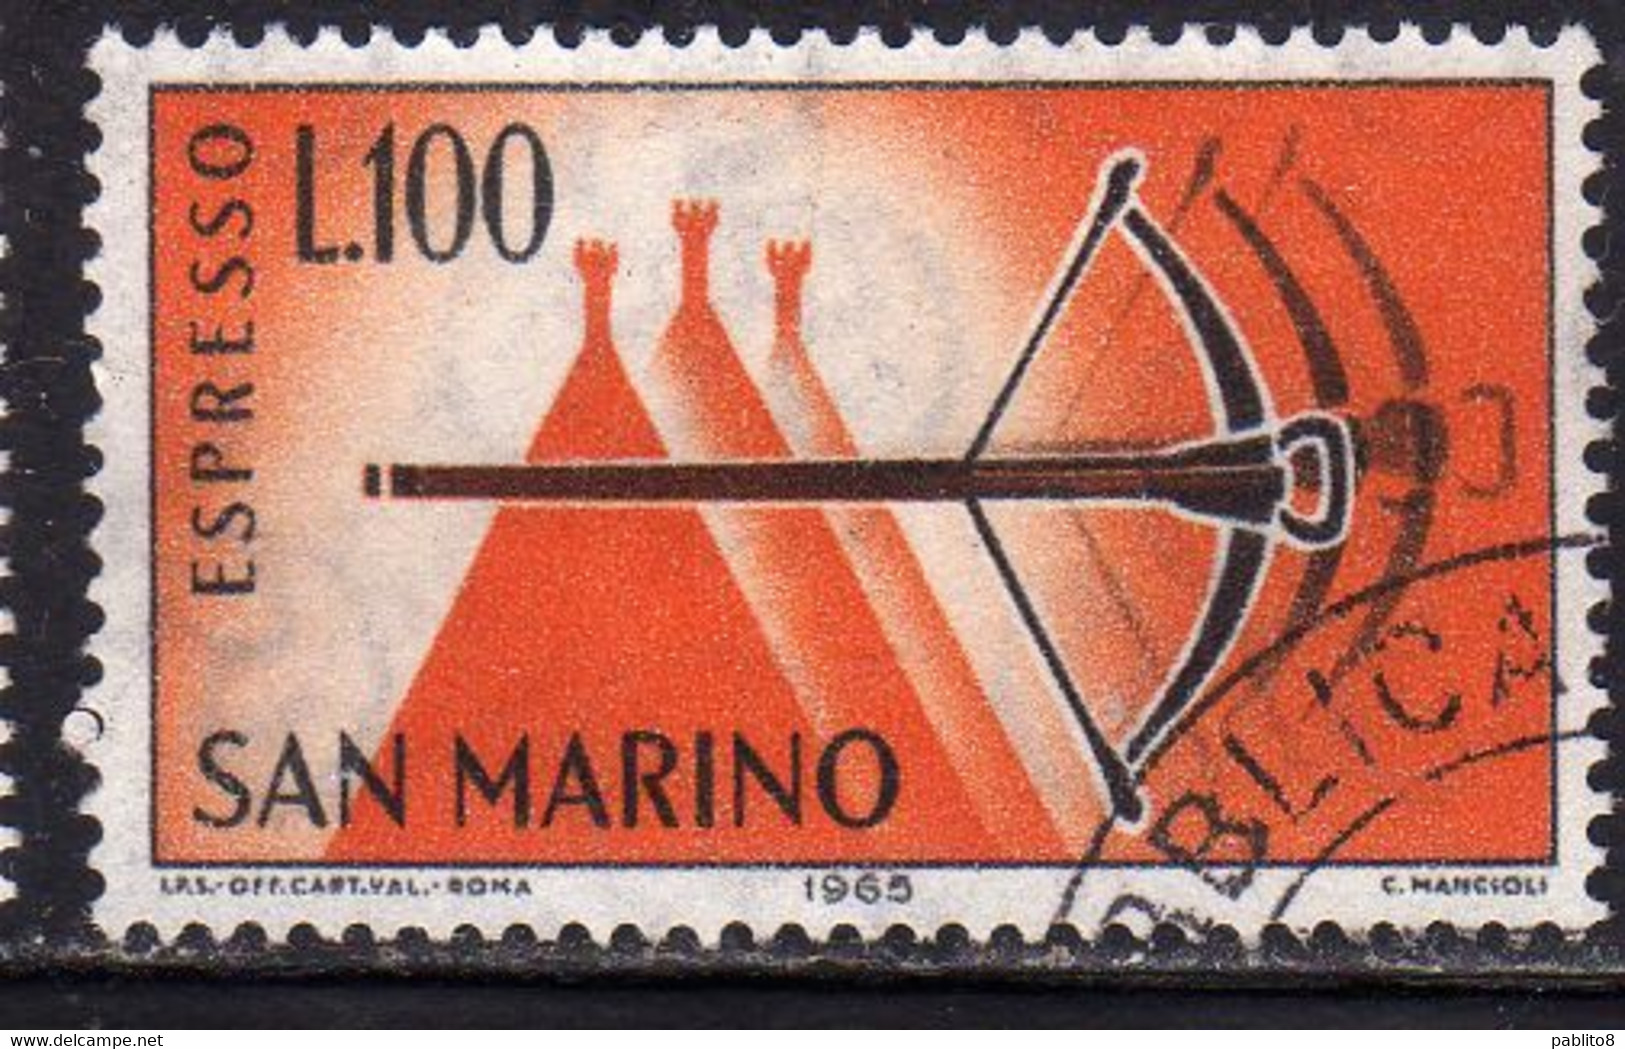 REPUBBLICA DI SAN MARINO 1966 ESPRESSI SPECIAL DELIVERY ESPRESSO BALESTRA LIRE 100 USATO USED OBLITERE' - Eilpost